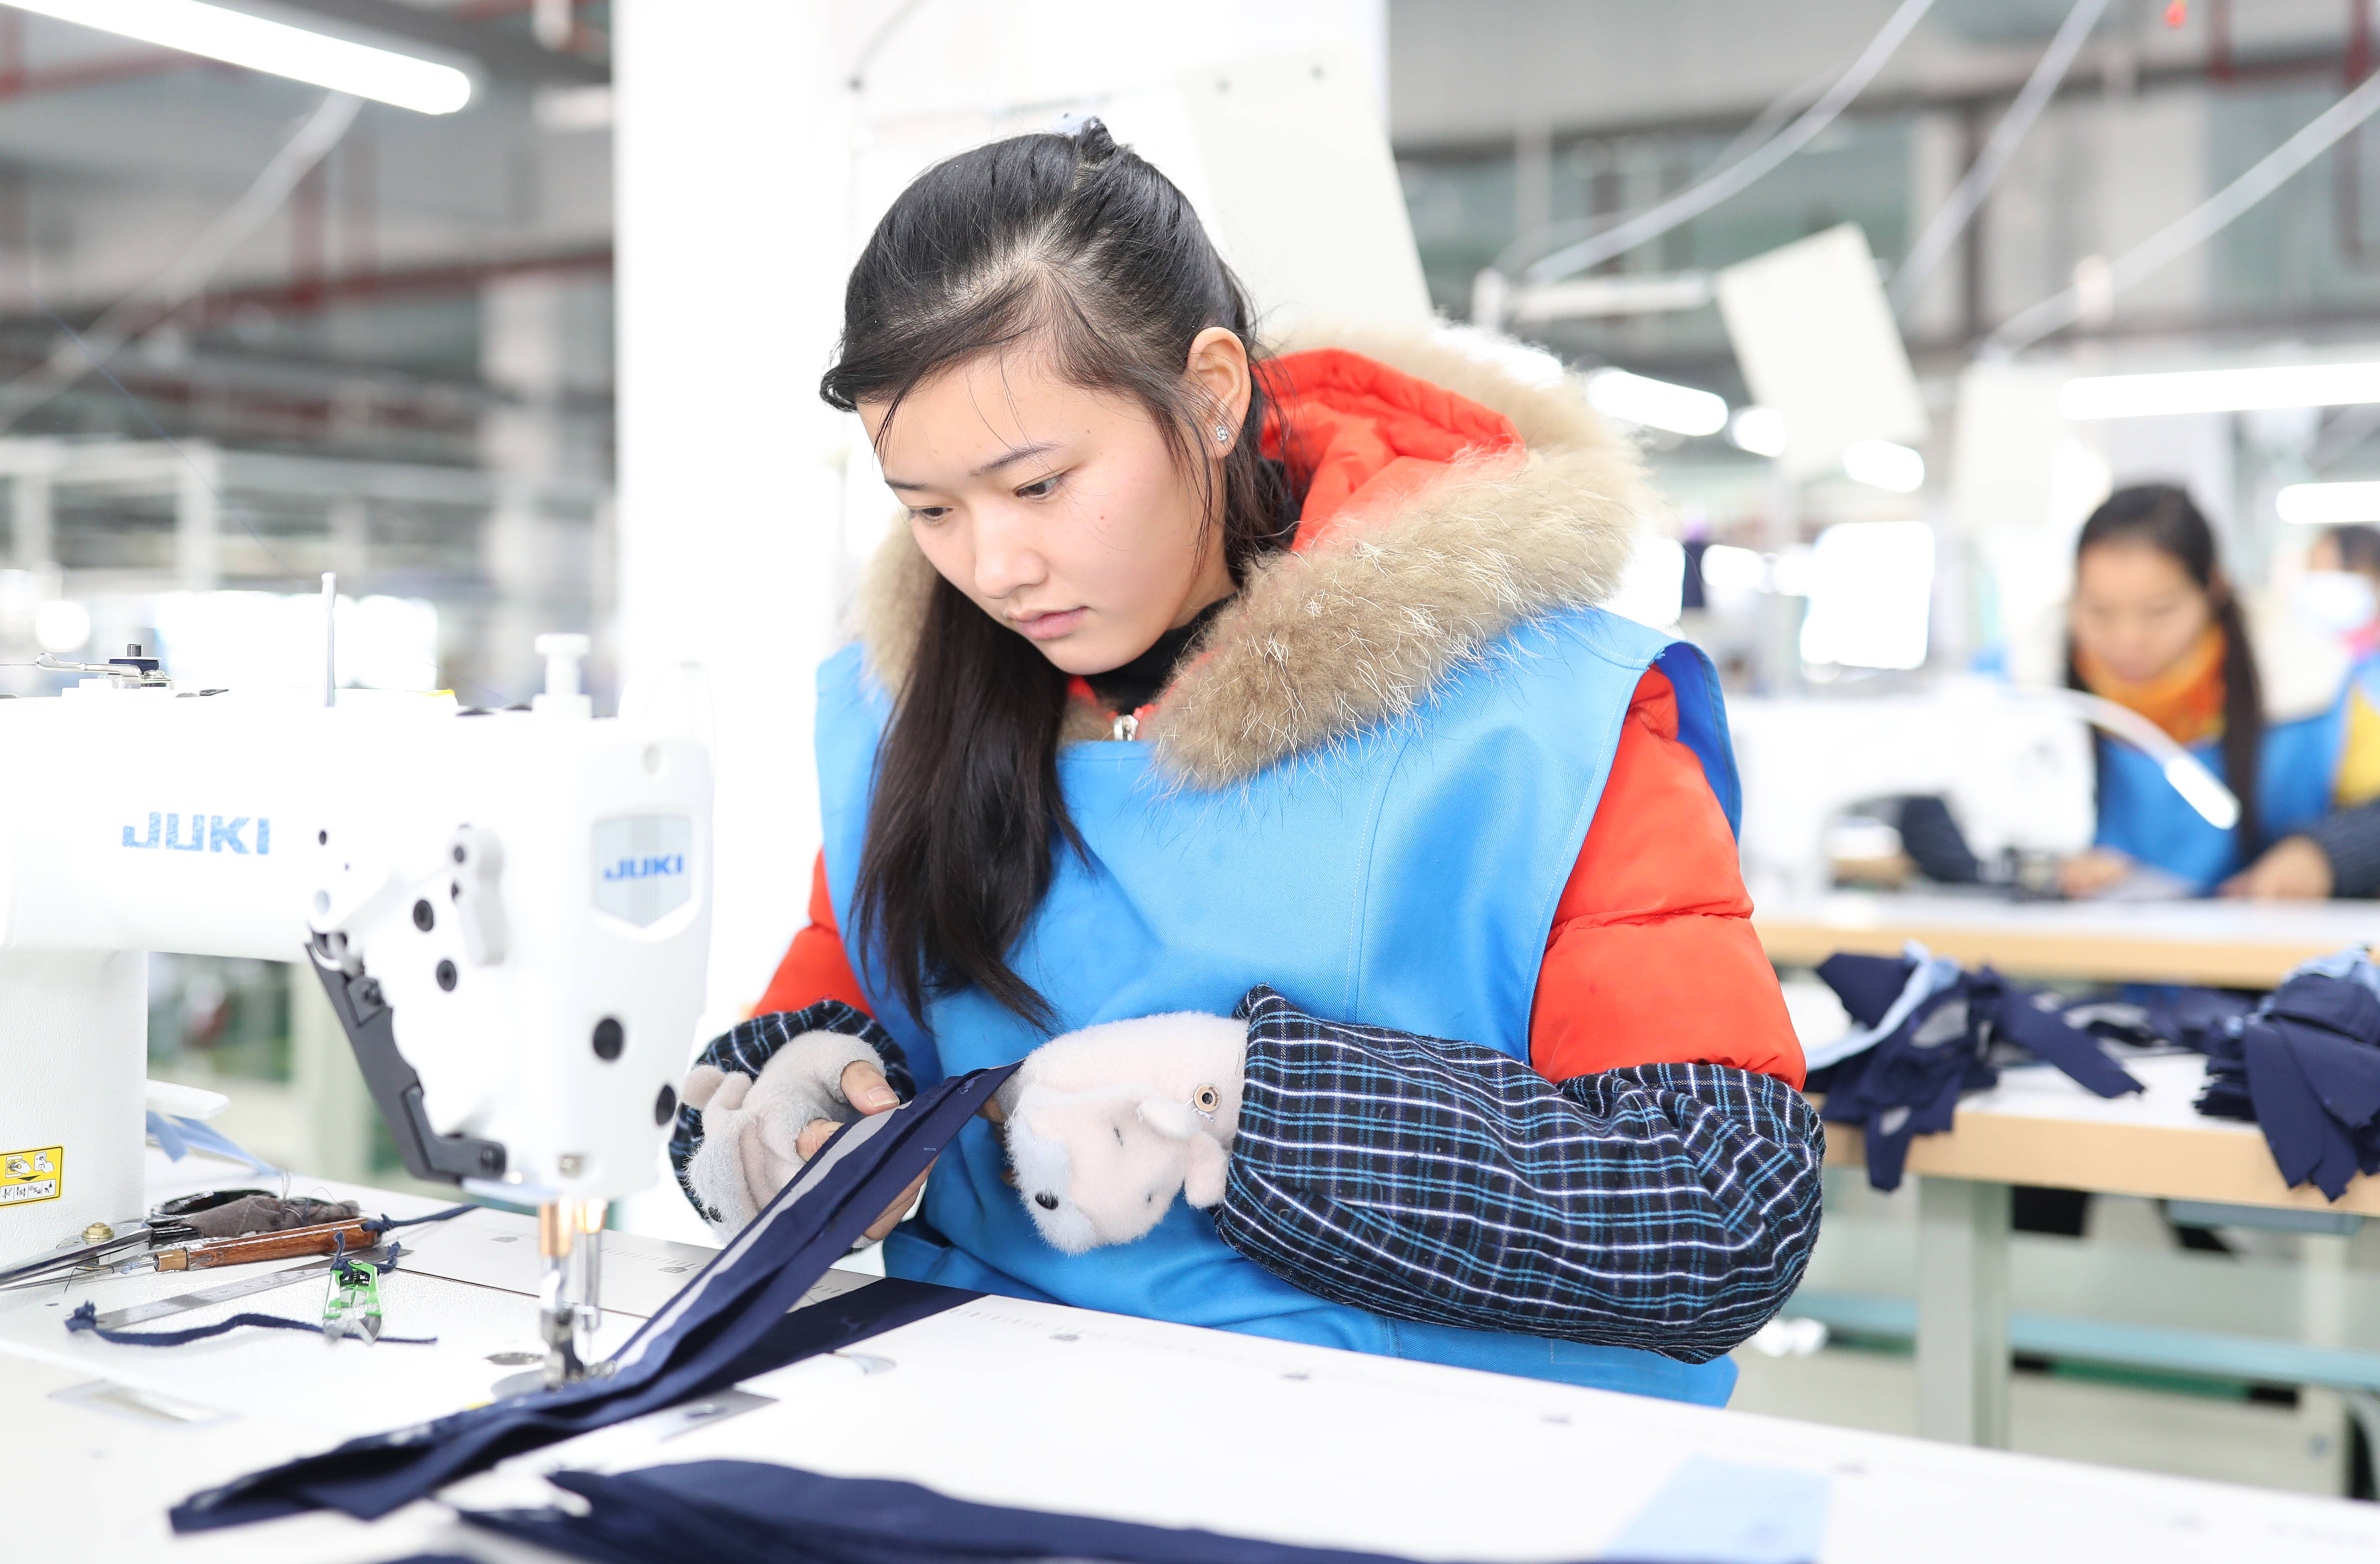 贵州玉屏:服装加工助力就业增收